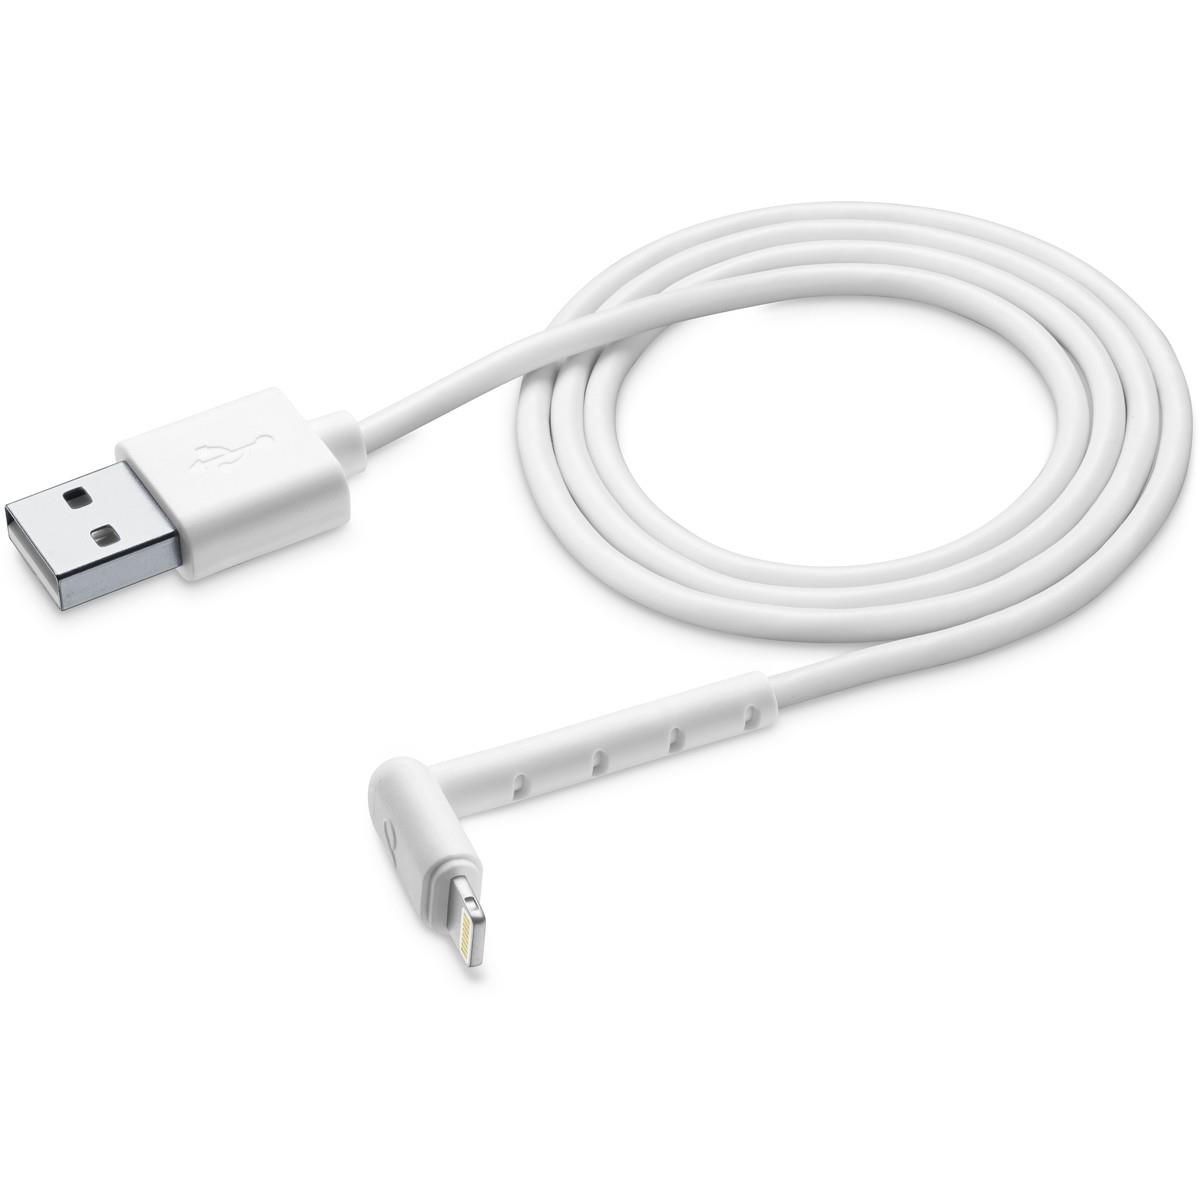 Lade- und Datenkabel STAND 120cm USB Type-A auf Apple Lightning